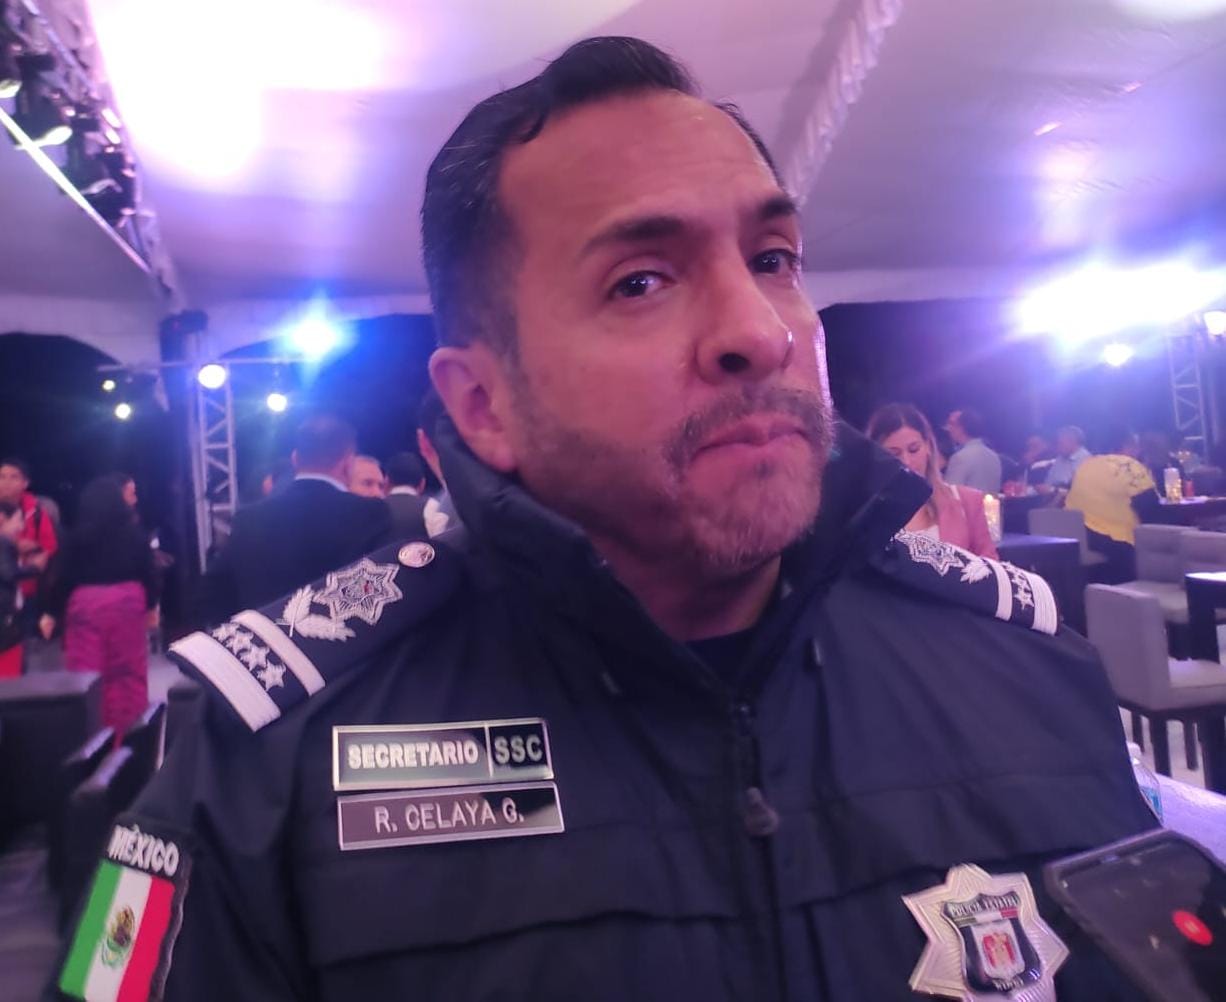 Homicidios en Tlaxcala son responsabilidad de “colombianos prestamistas”: SSC